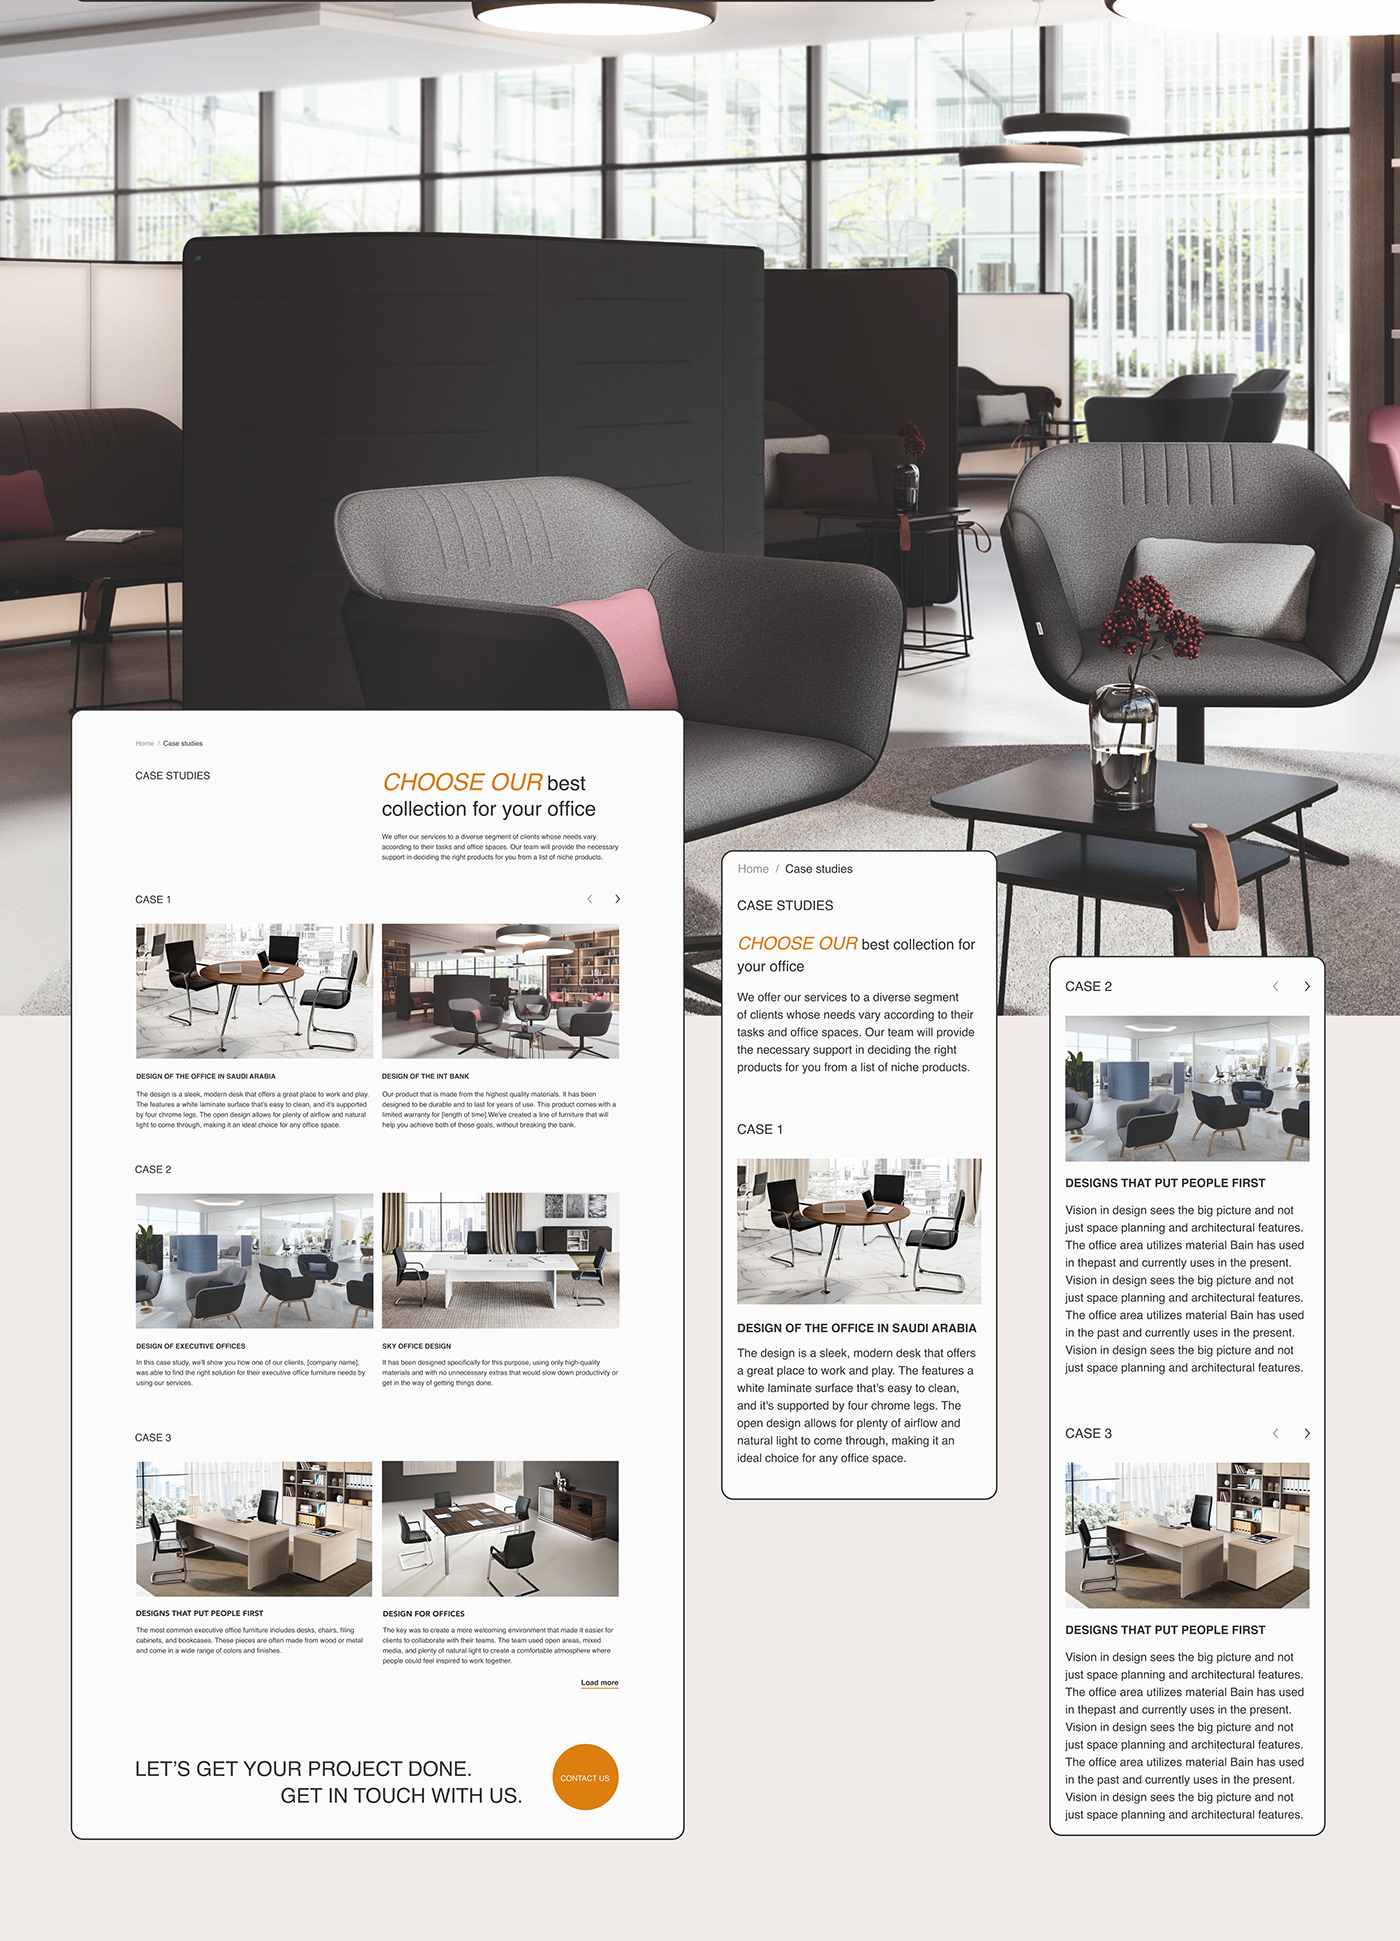 designer furniture interior design  interior studio interiordesign landing page UI/UX Web Design  Website wordpress